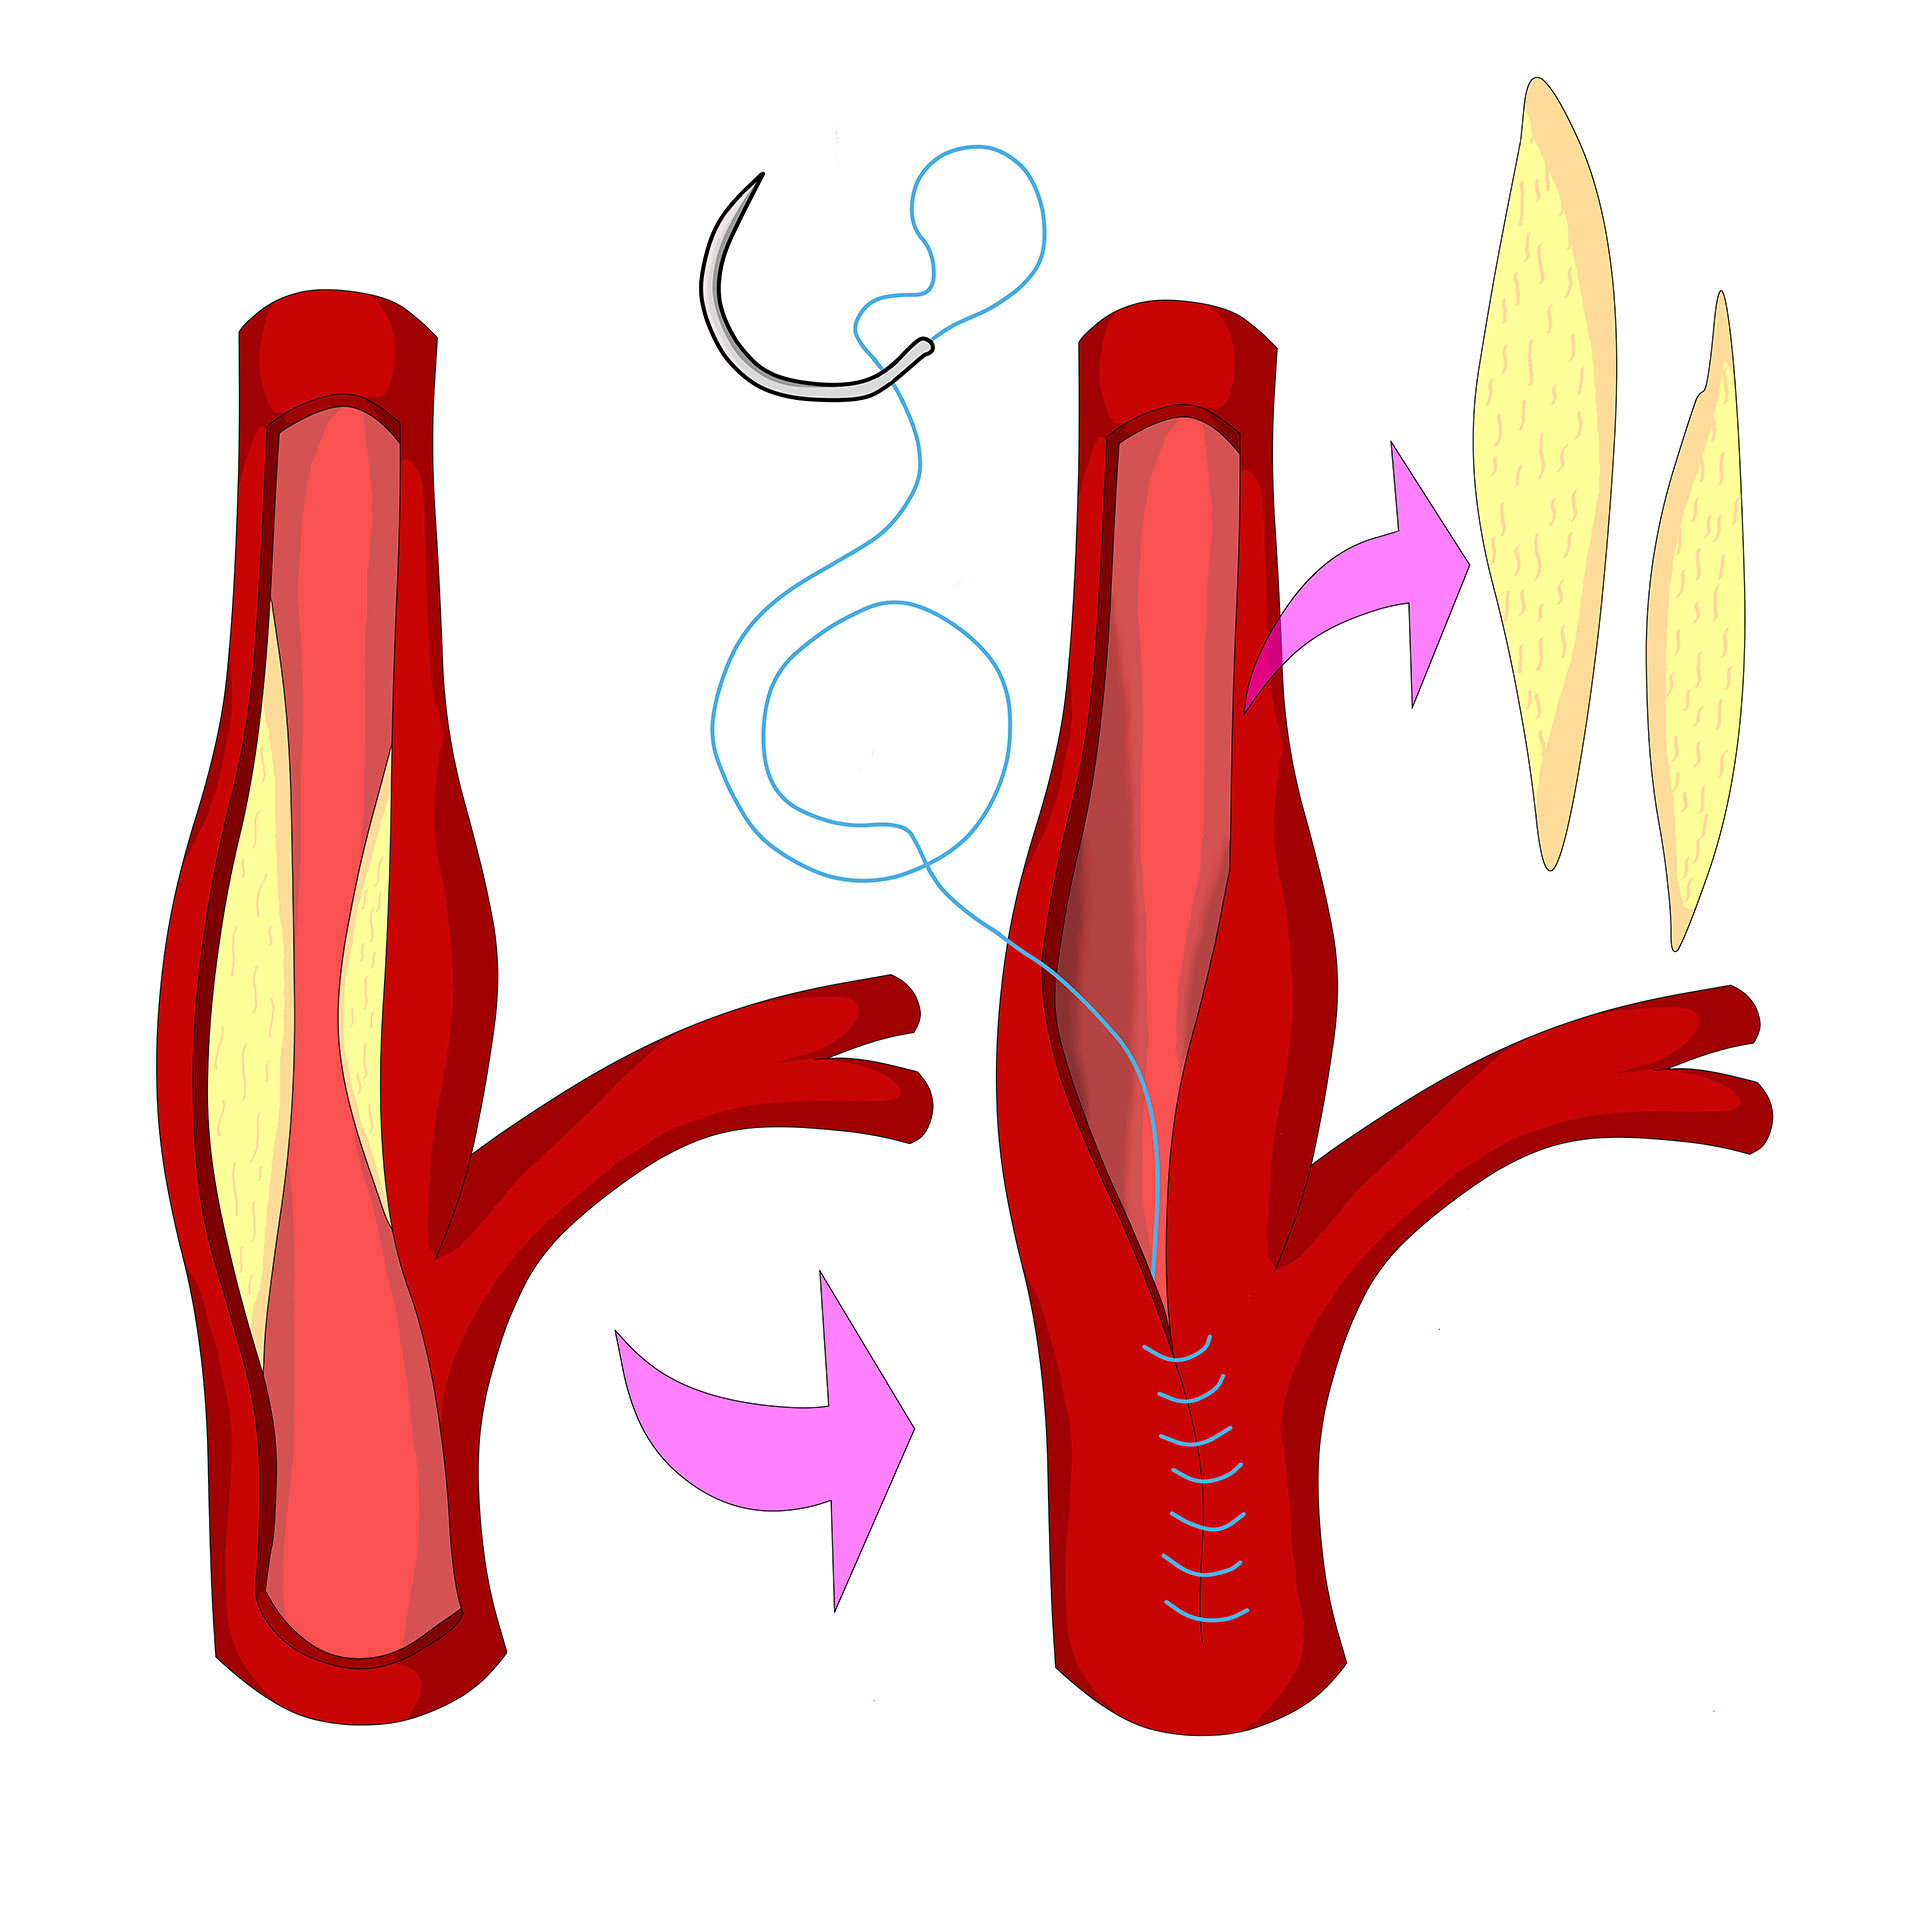 Sténose carotidienne : examen de l'artère carotide par doppler